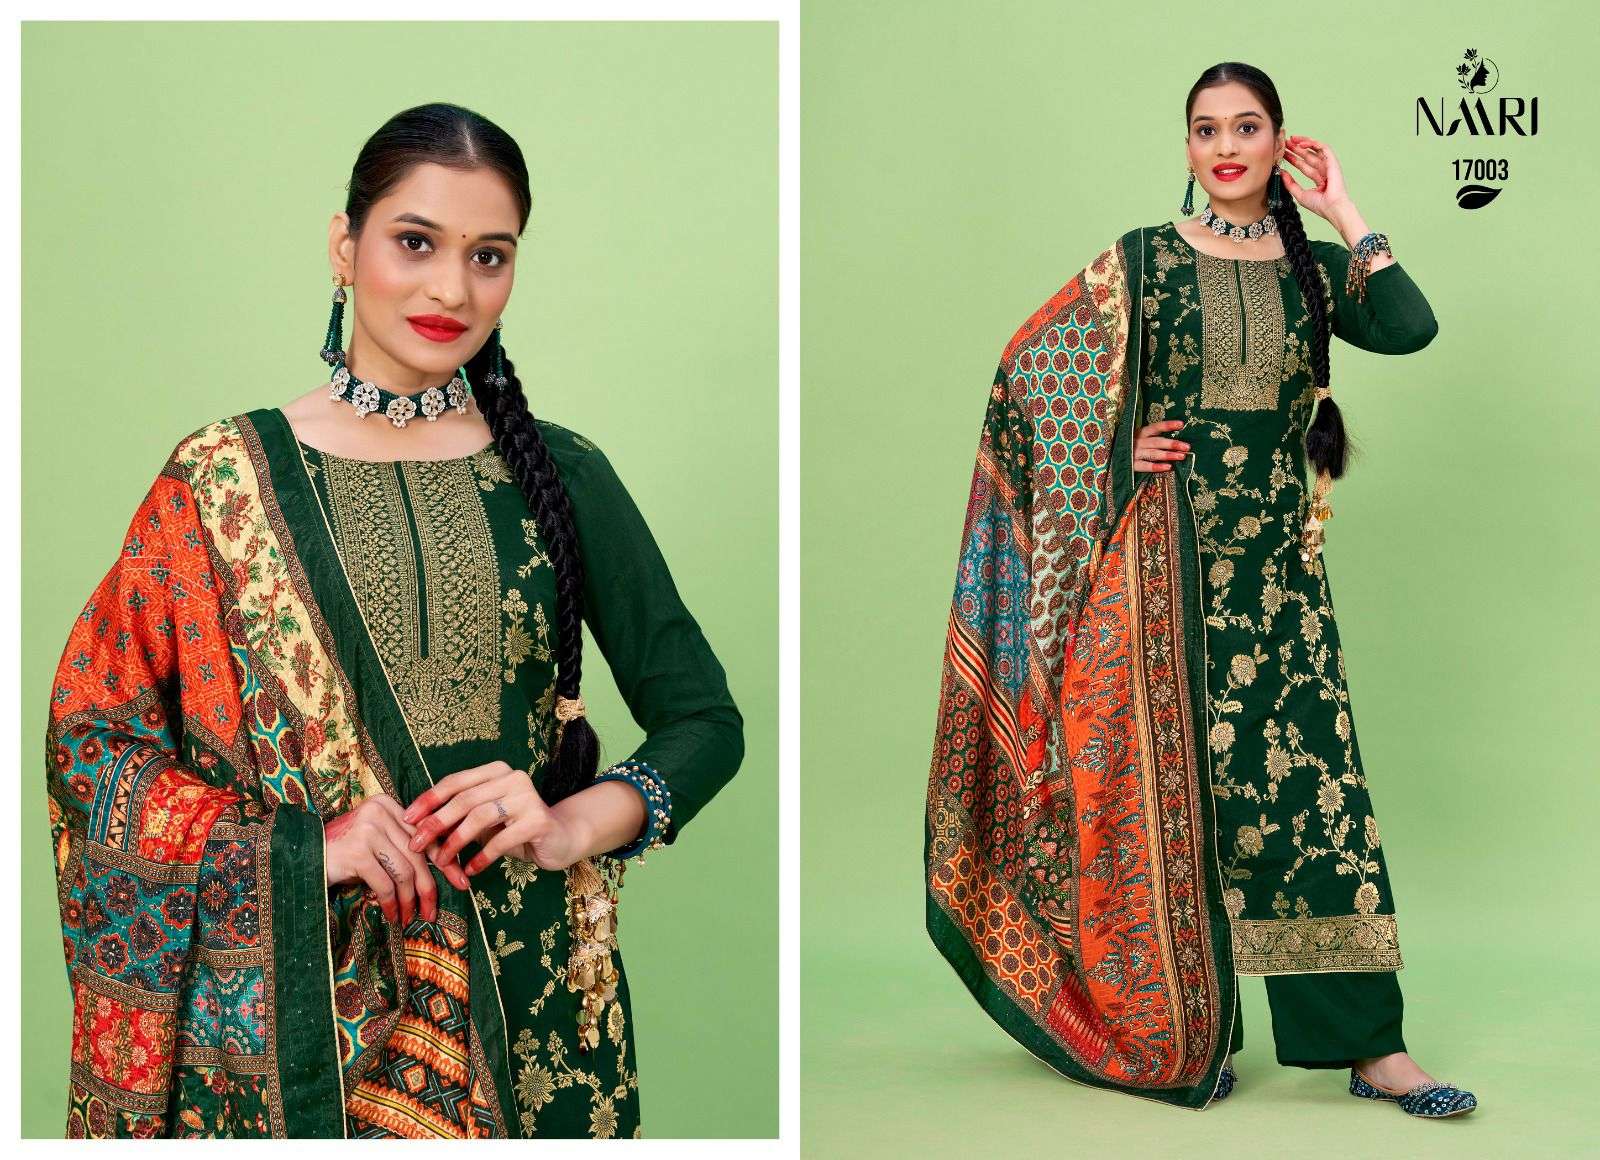 naari riona jacard 17001-17004 series designer wedding wear salwar kameez wholesaler surat